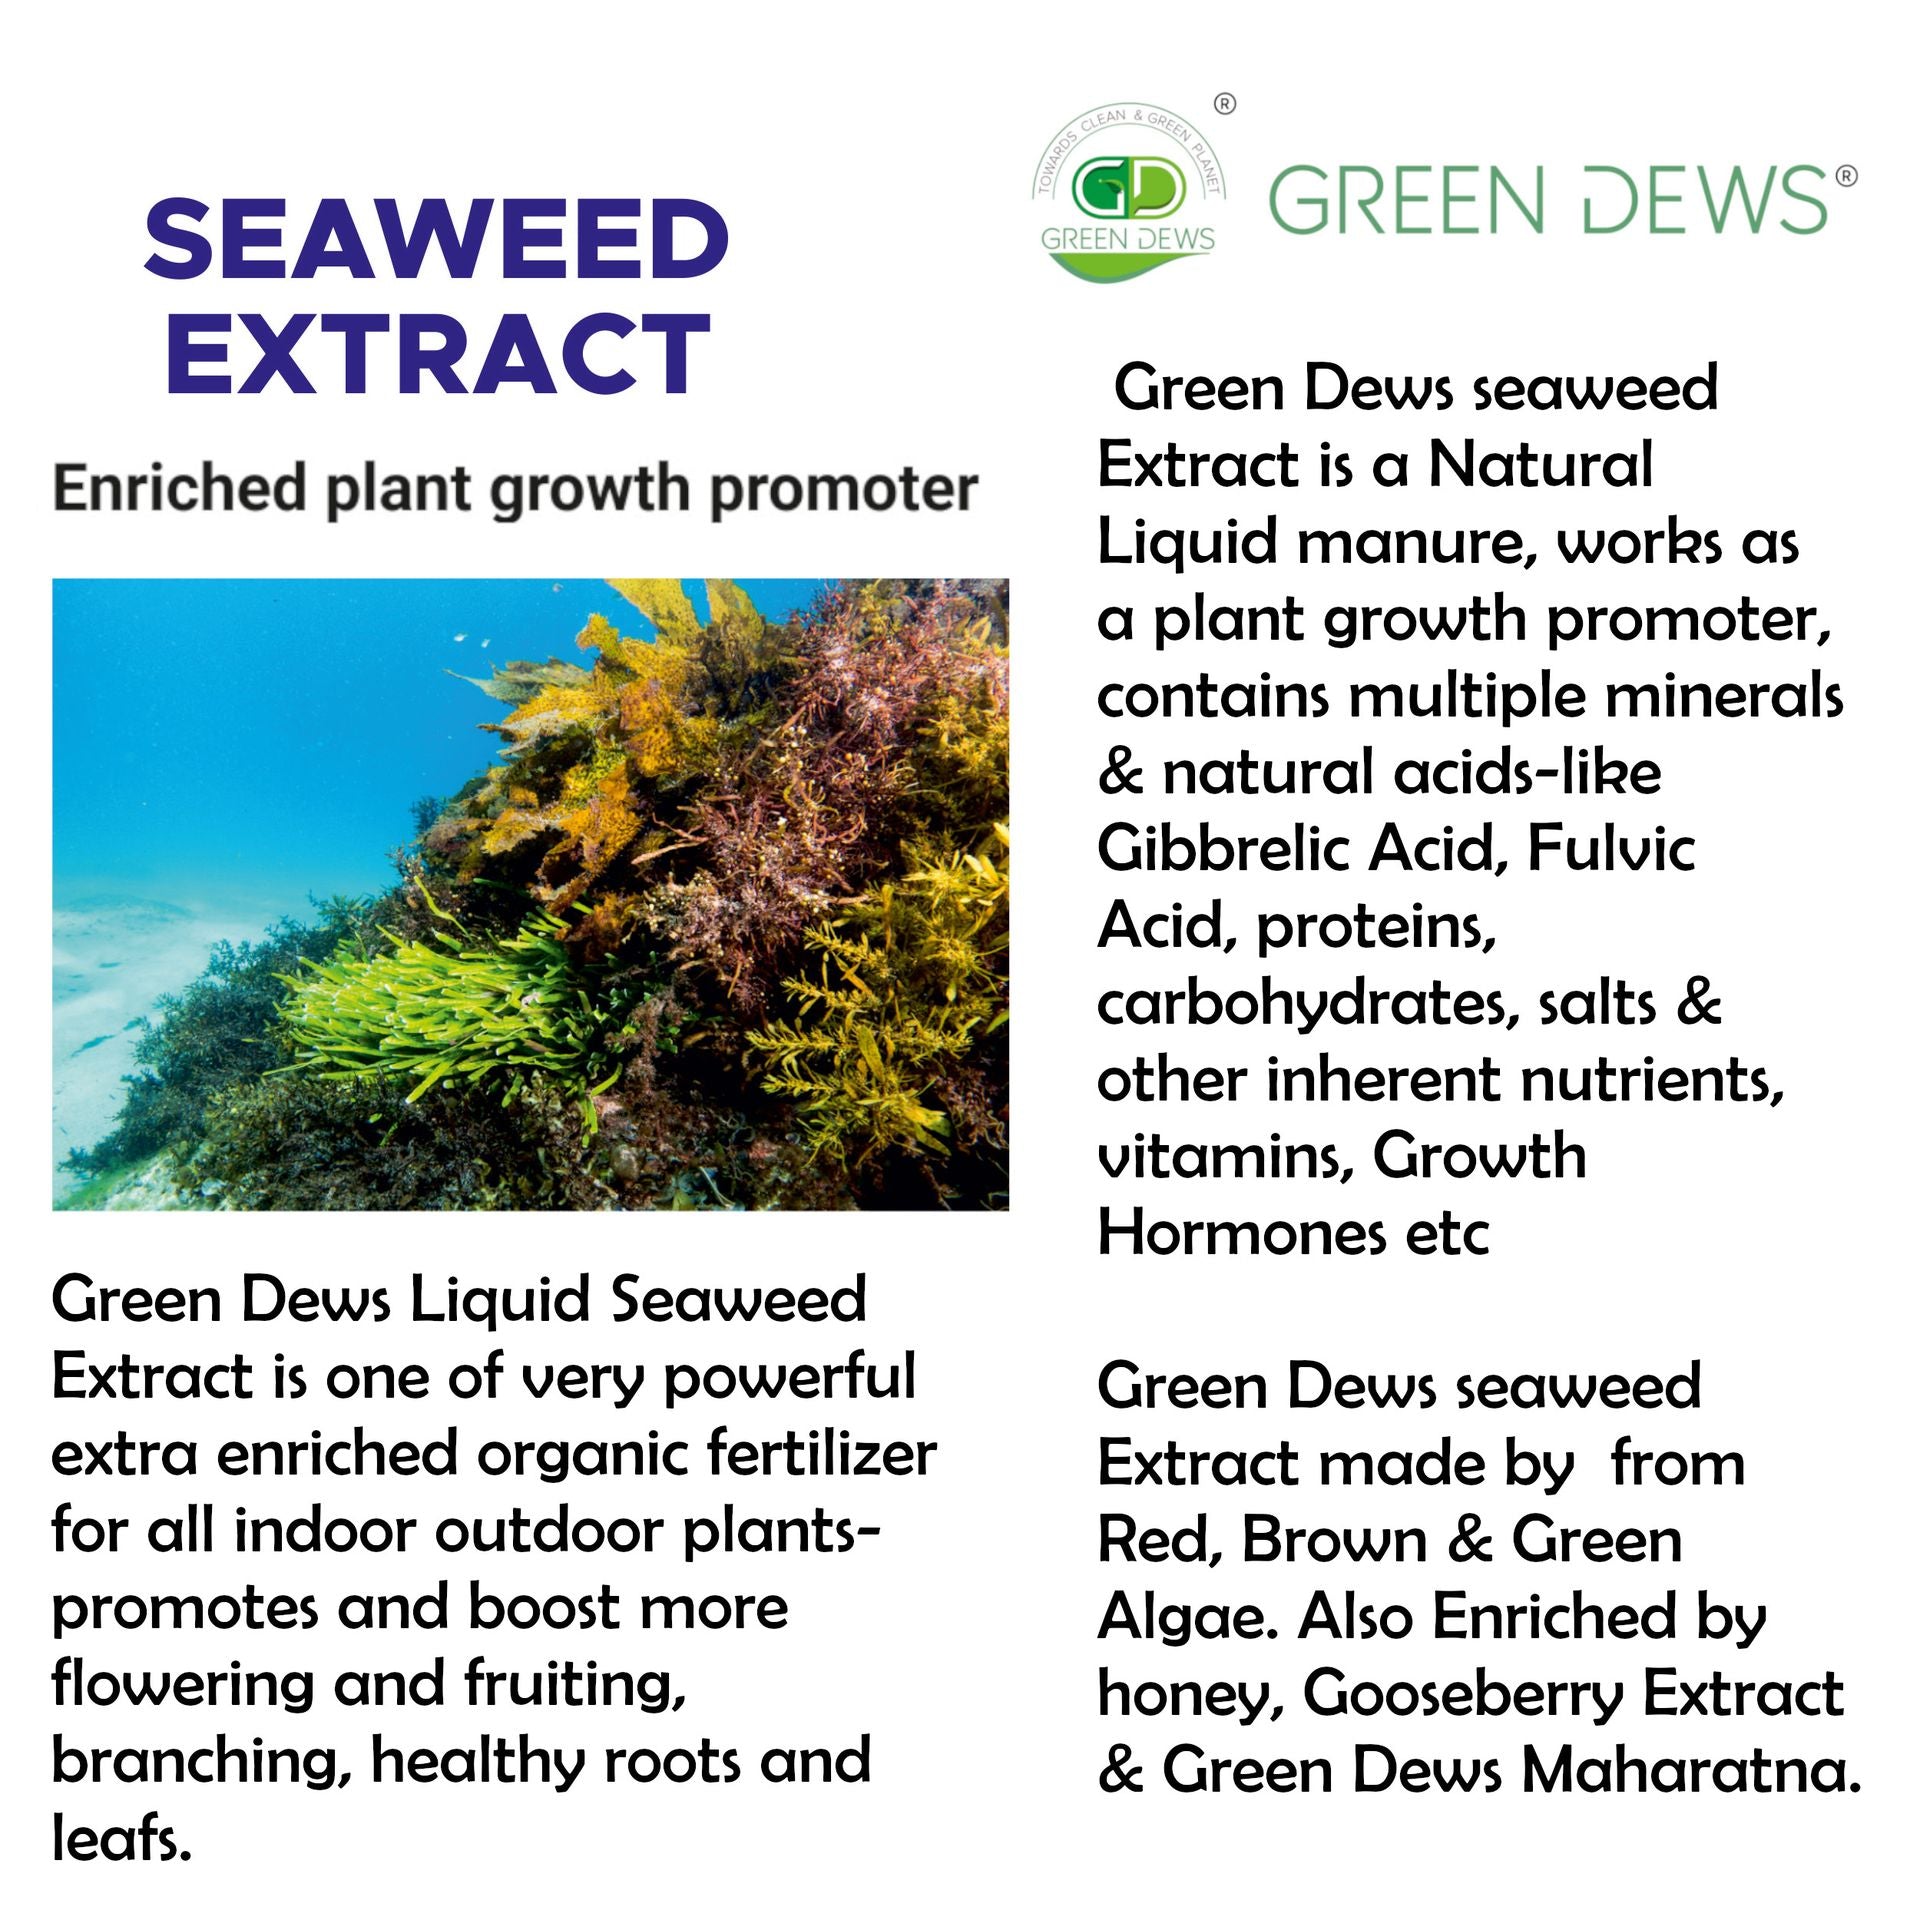 Green Dews Liquid Seaweed Extract Fertilizer for All Indoor-Outdoor Pl